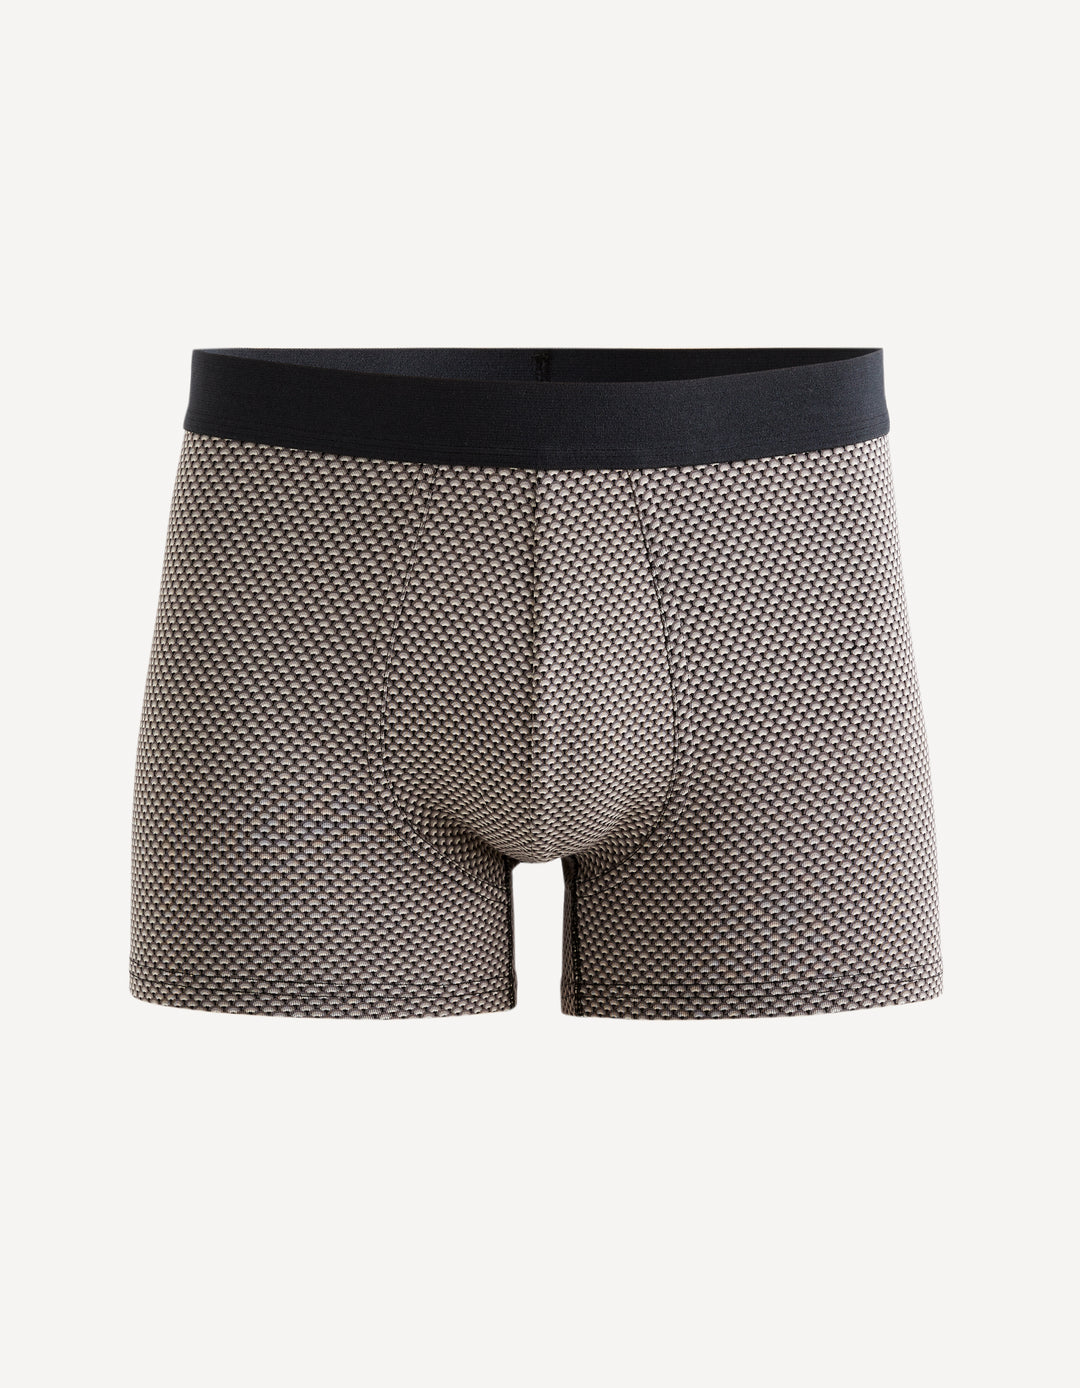 Art deco stretch cotton boxer shorts